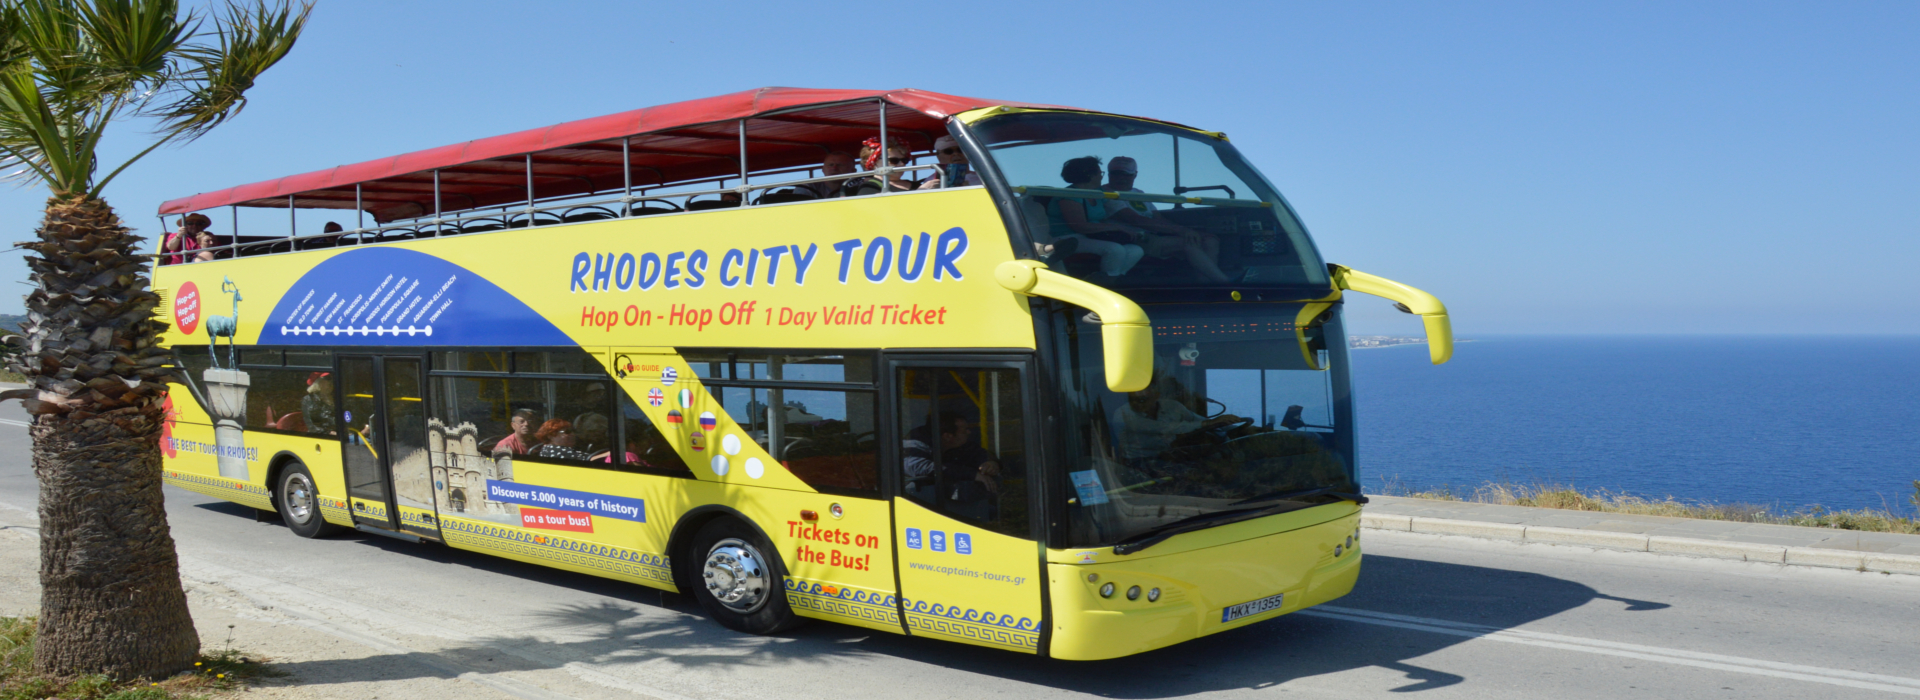 Родосский тур с открытым автобусом, OpenBus | Captains Tours